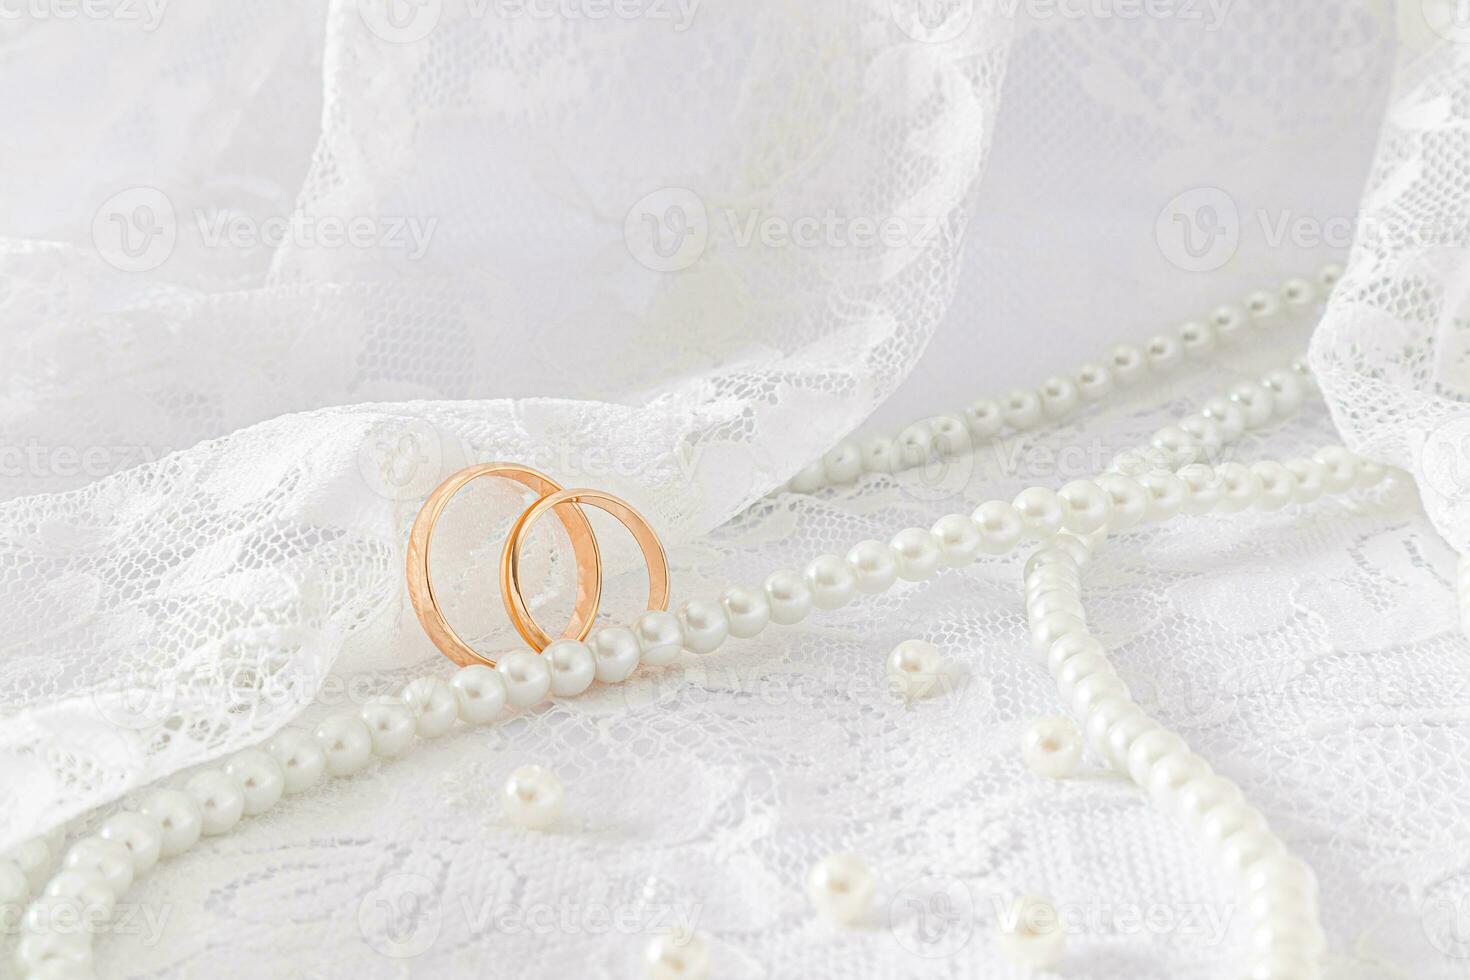 dos oro Boda anillos en contra el suave pliegues de el cordón tela de el de la novia vestido. un largo cuerda de perla rosario. diseño para diseño. foto